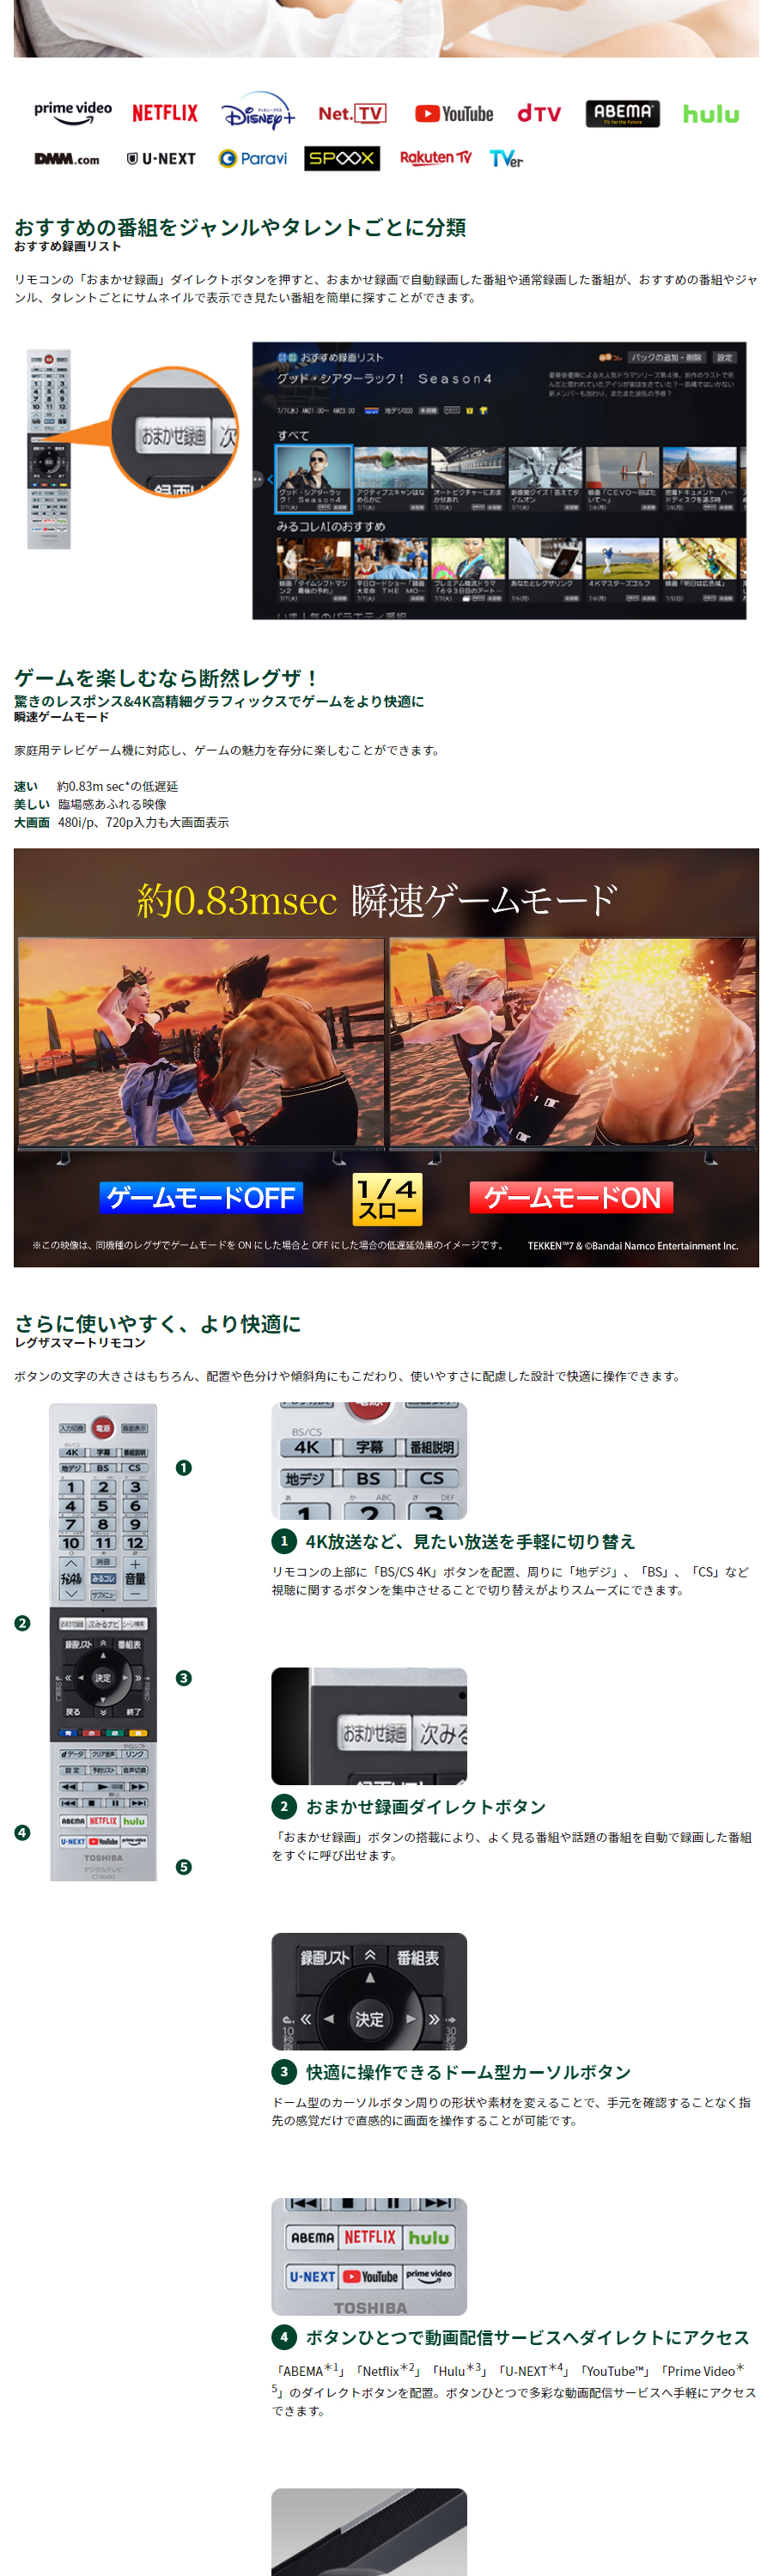 テレビ 43型 LED液晶テレビ 東芝 レグザ TOSHIBA REGZA 43インチ TV 